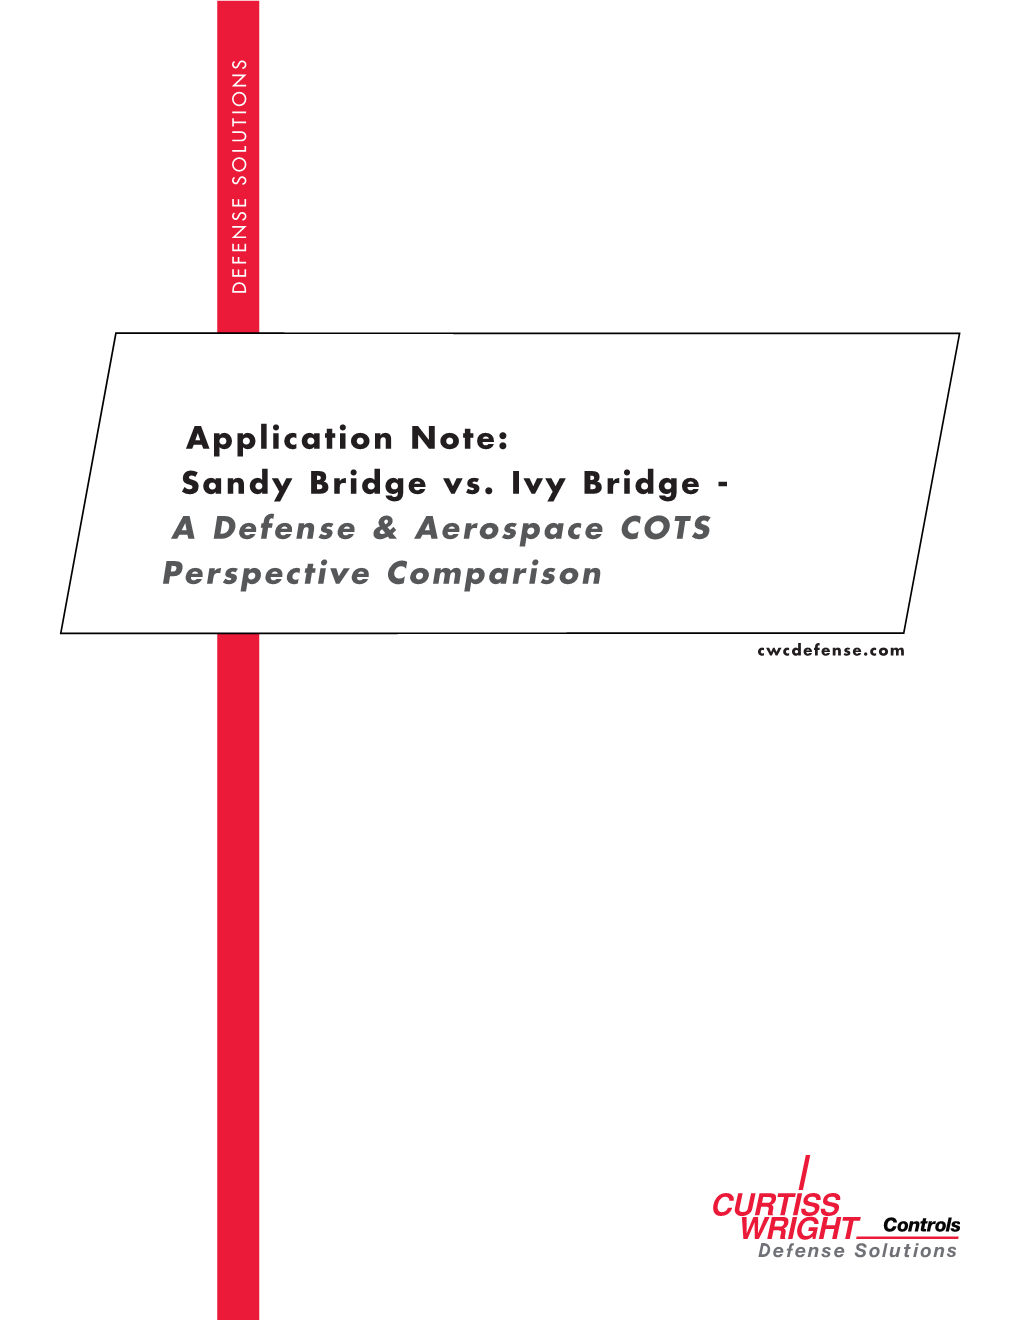 Sandy Bridge Vs. Ivy Bridge - a Defense & Aerospace COTS Perspective Comparison